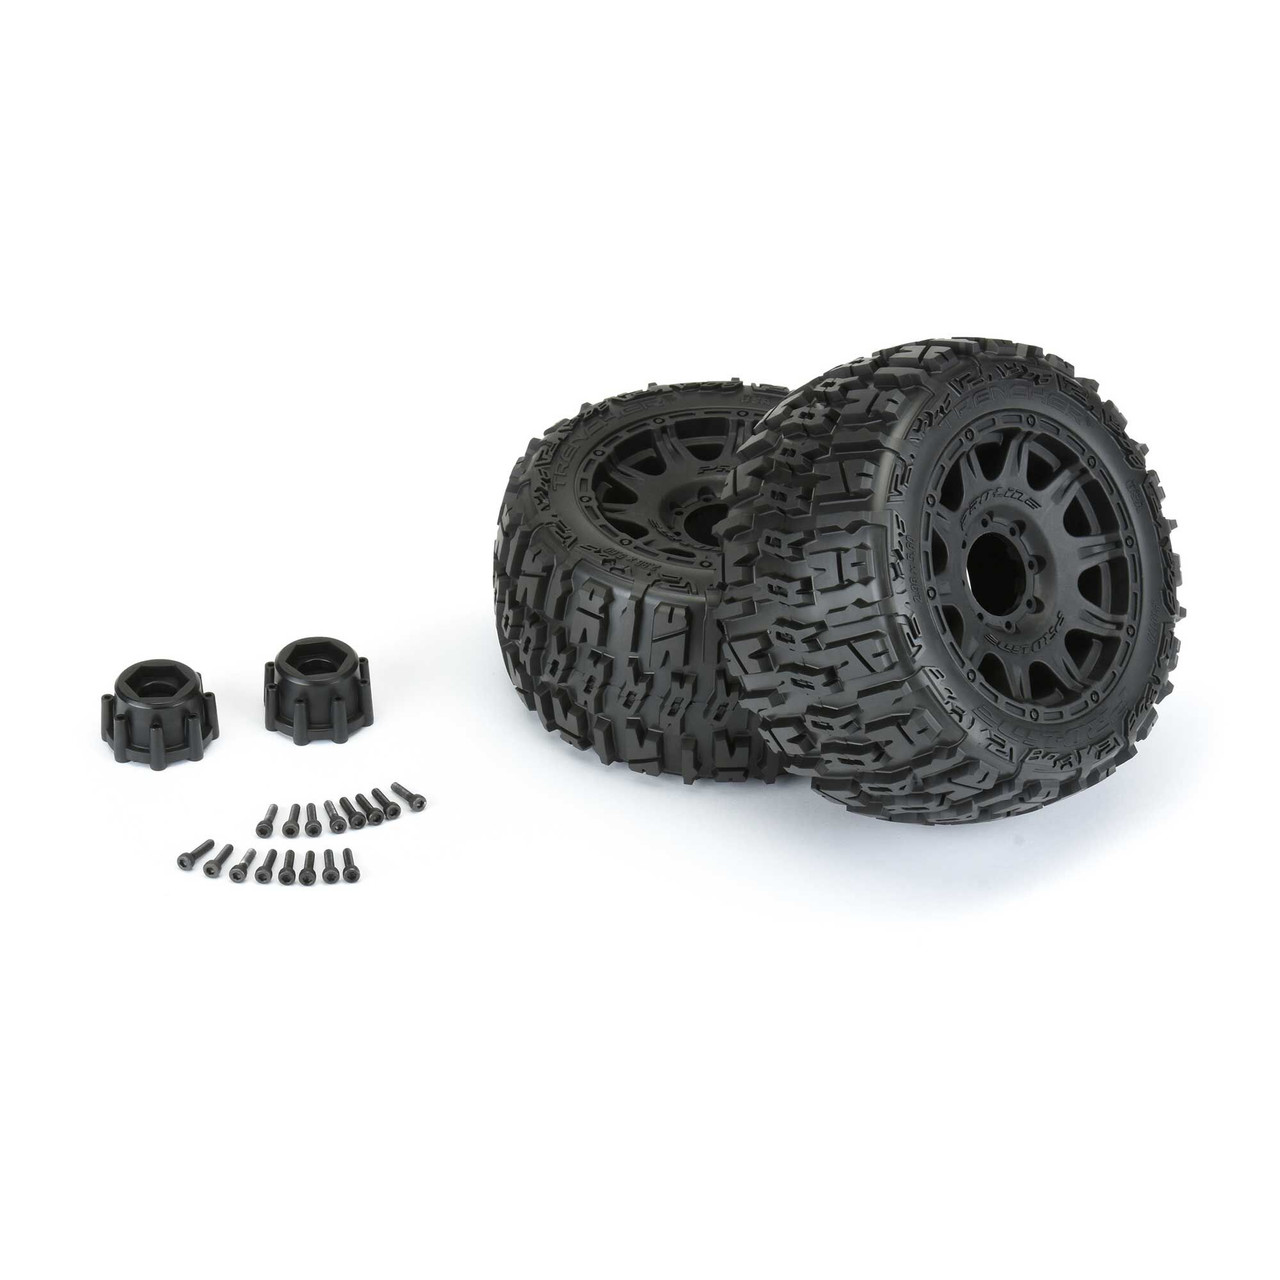 Pro-Line 1:8 Trencher LP F/R 3.8" MT Tires Mounted 17mm Blk Raid (2)  PRO10175-10 - Jadlam Toys & Models - Buy Toys & Models Online